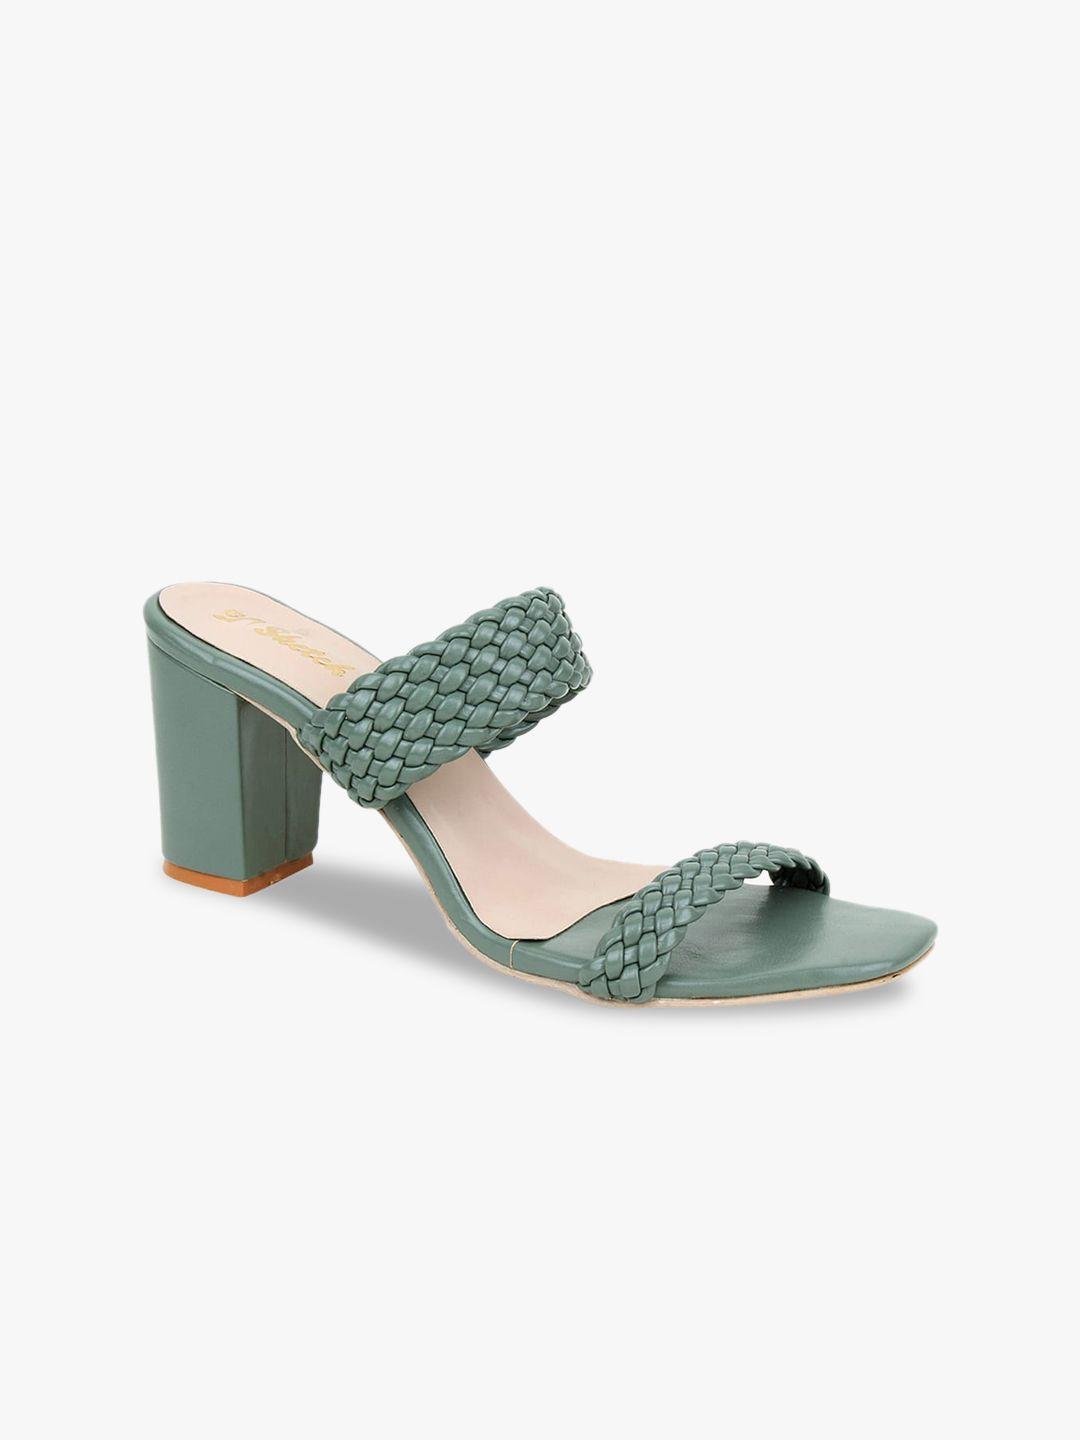 glitzy galz green block heels